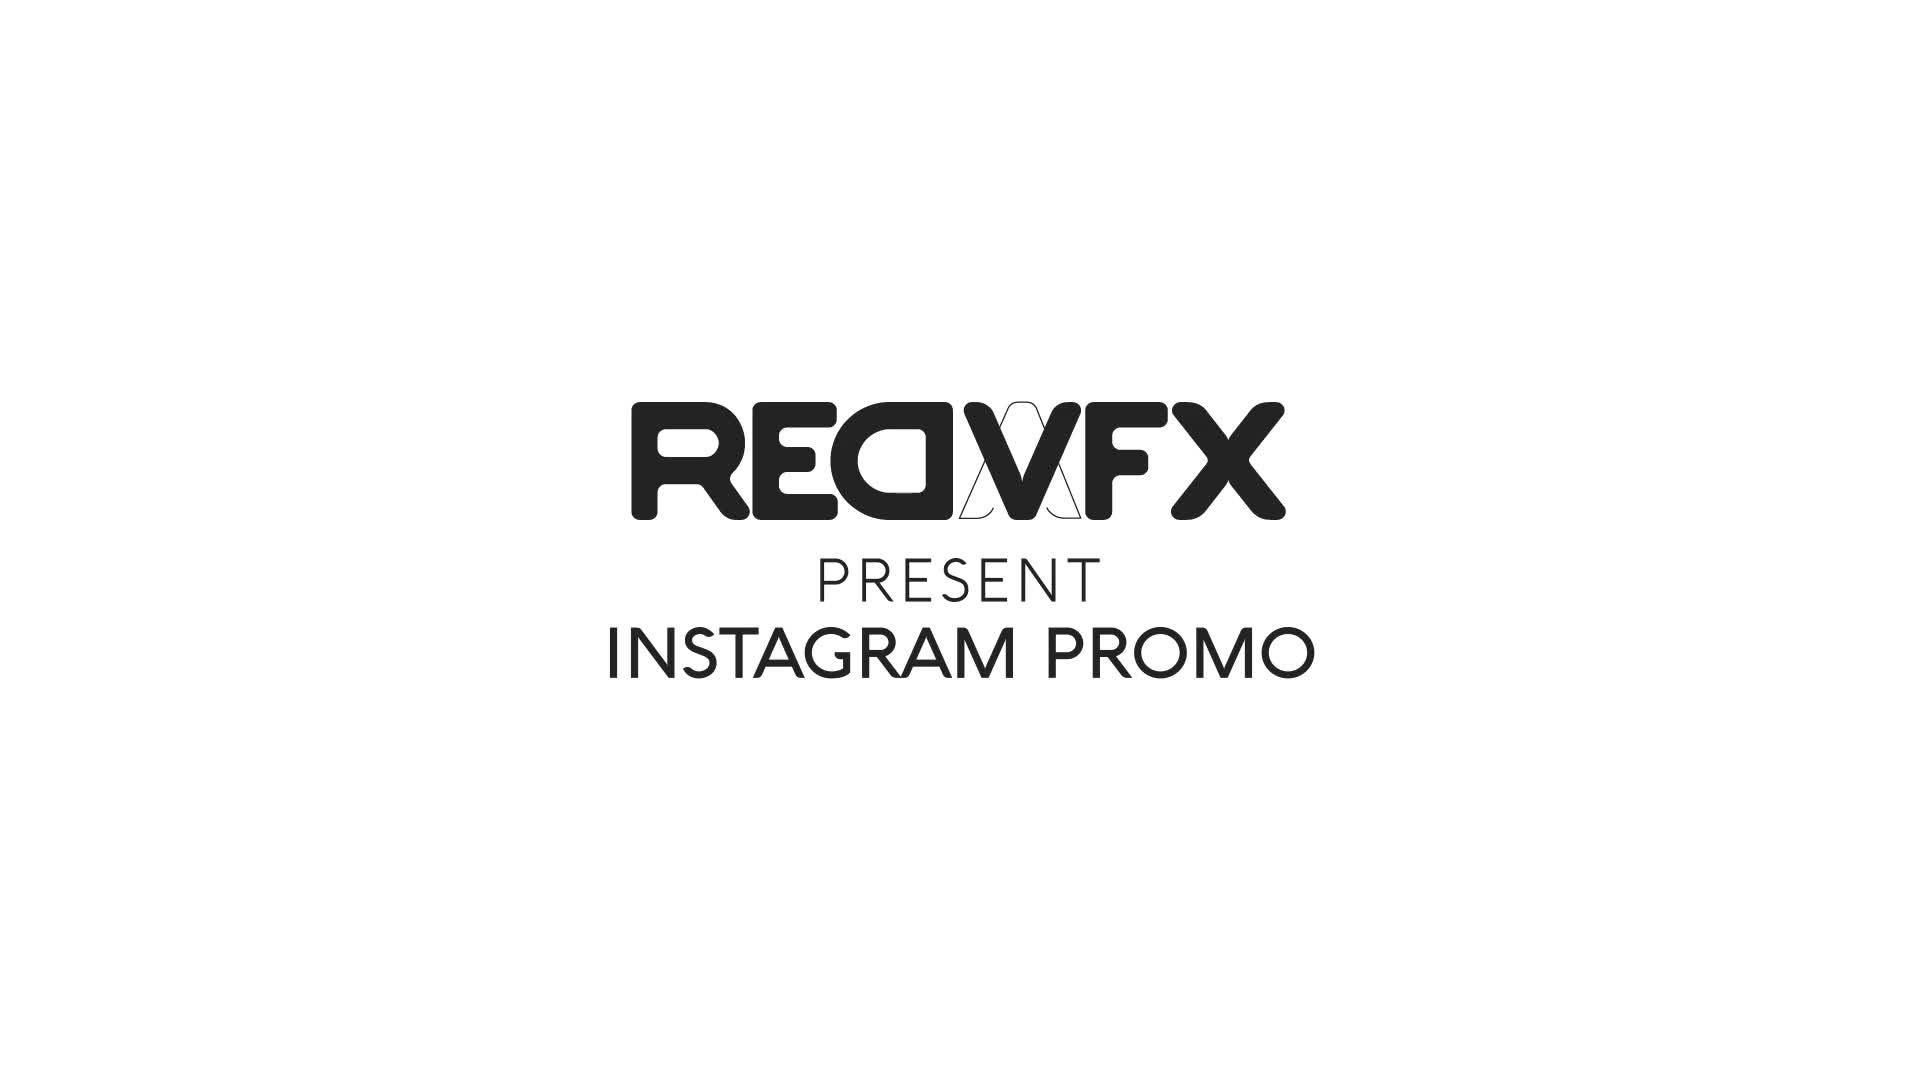 Instagram Promo for Premiere Pro Videohive 36478083 Premiere Pro Image 1